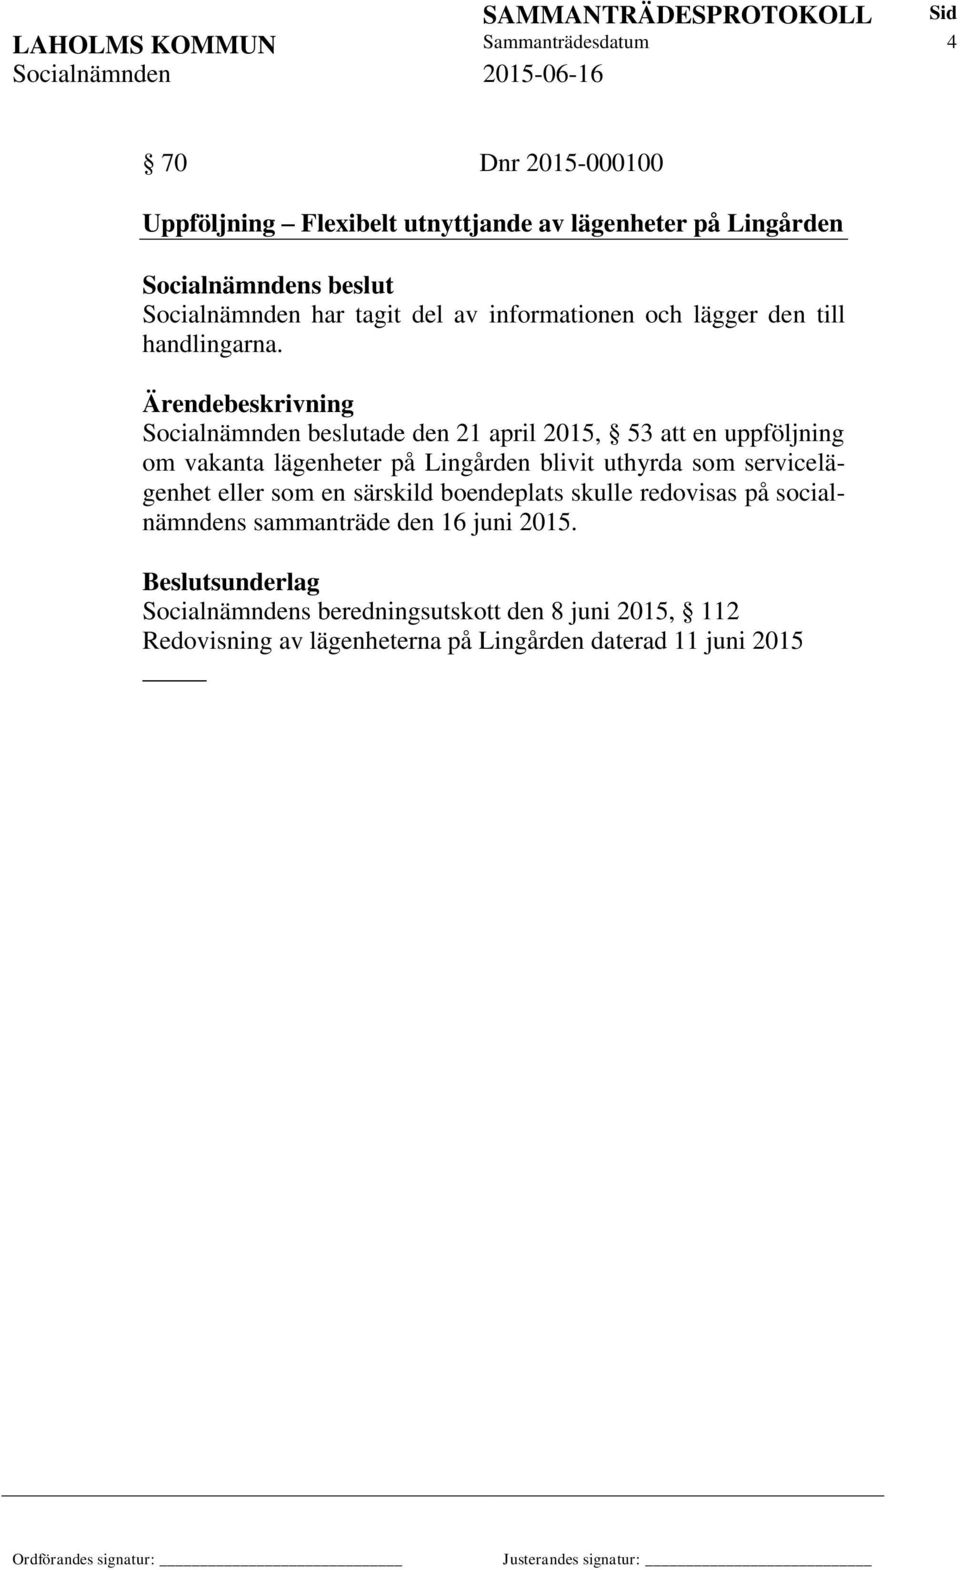 Socialnämnden beslutade den 21 april 2015, 53 att en uppföljning om vakanta lägenheter på Lingården blivit uthyrda som servicelägenhet